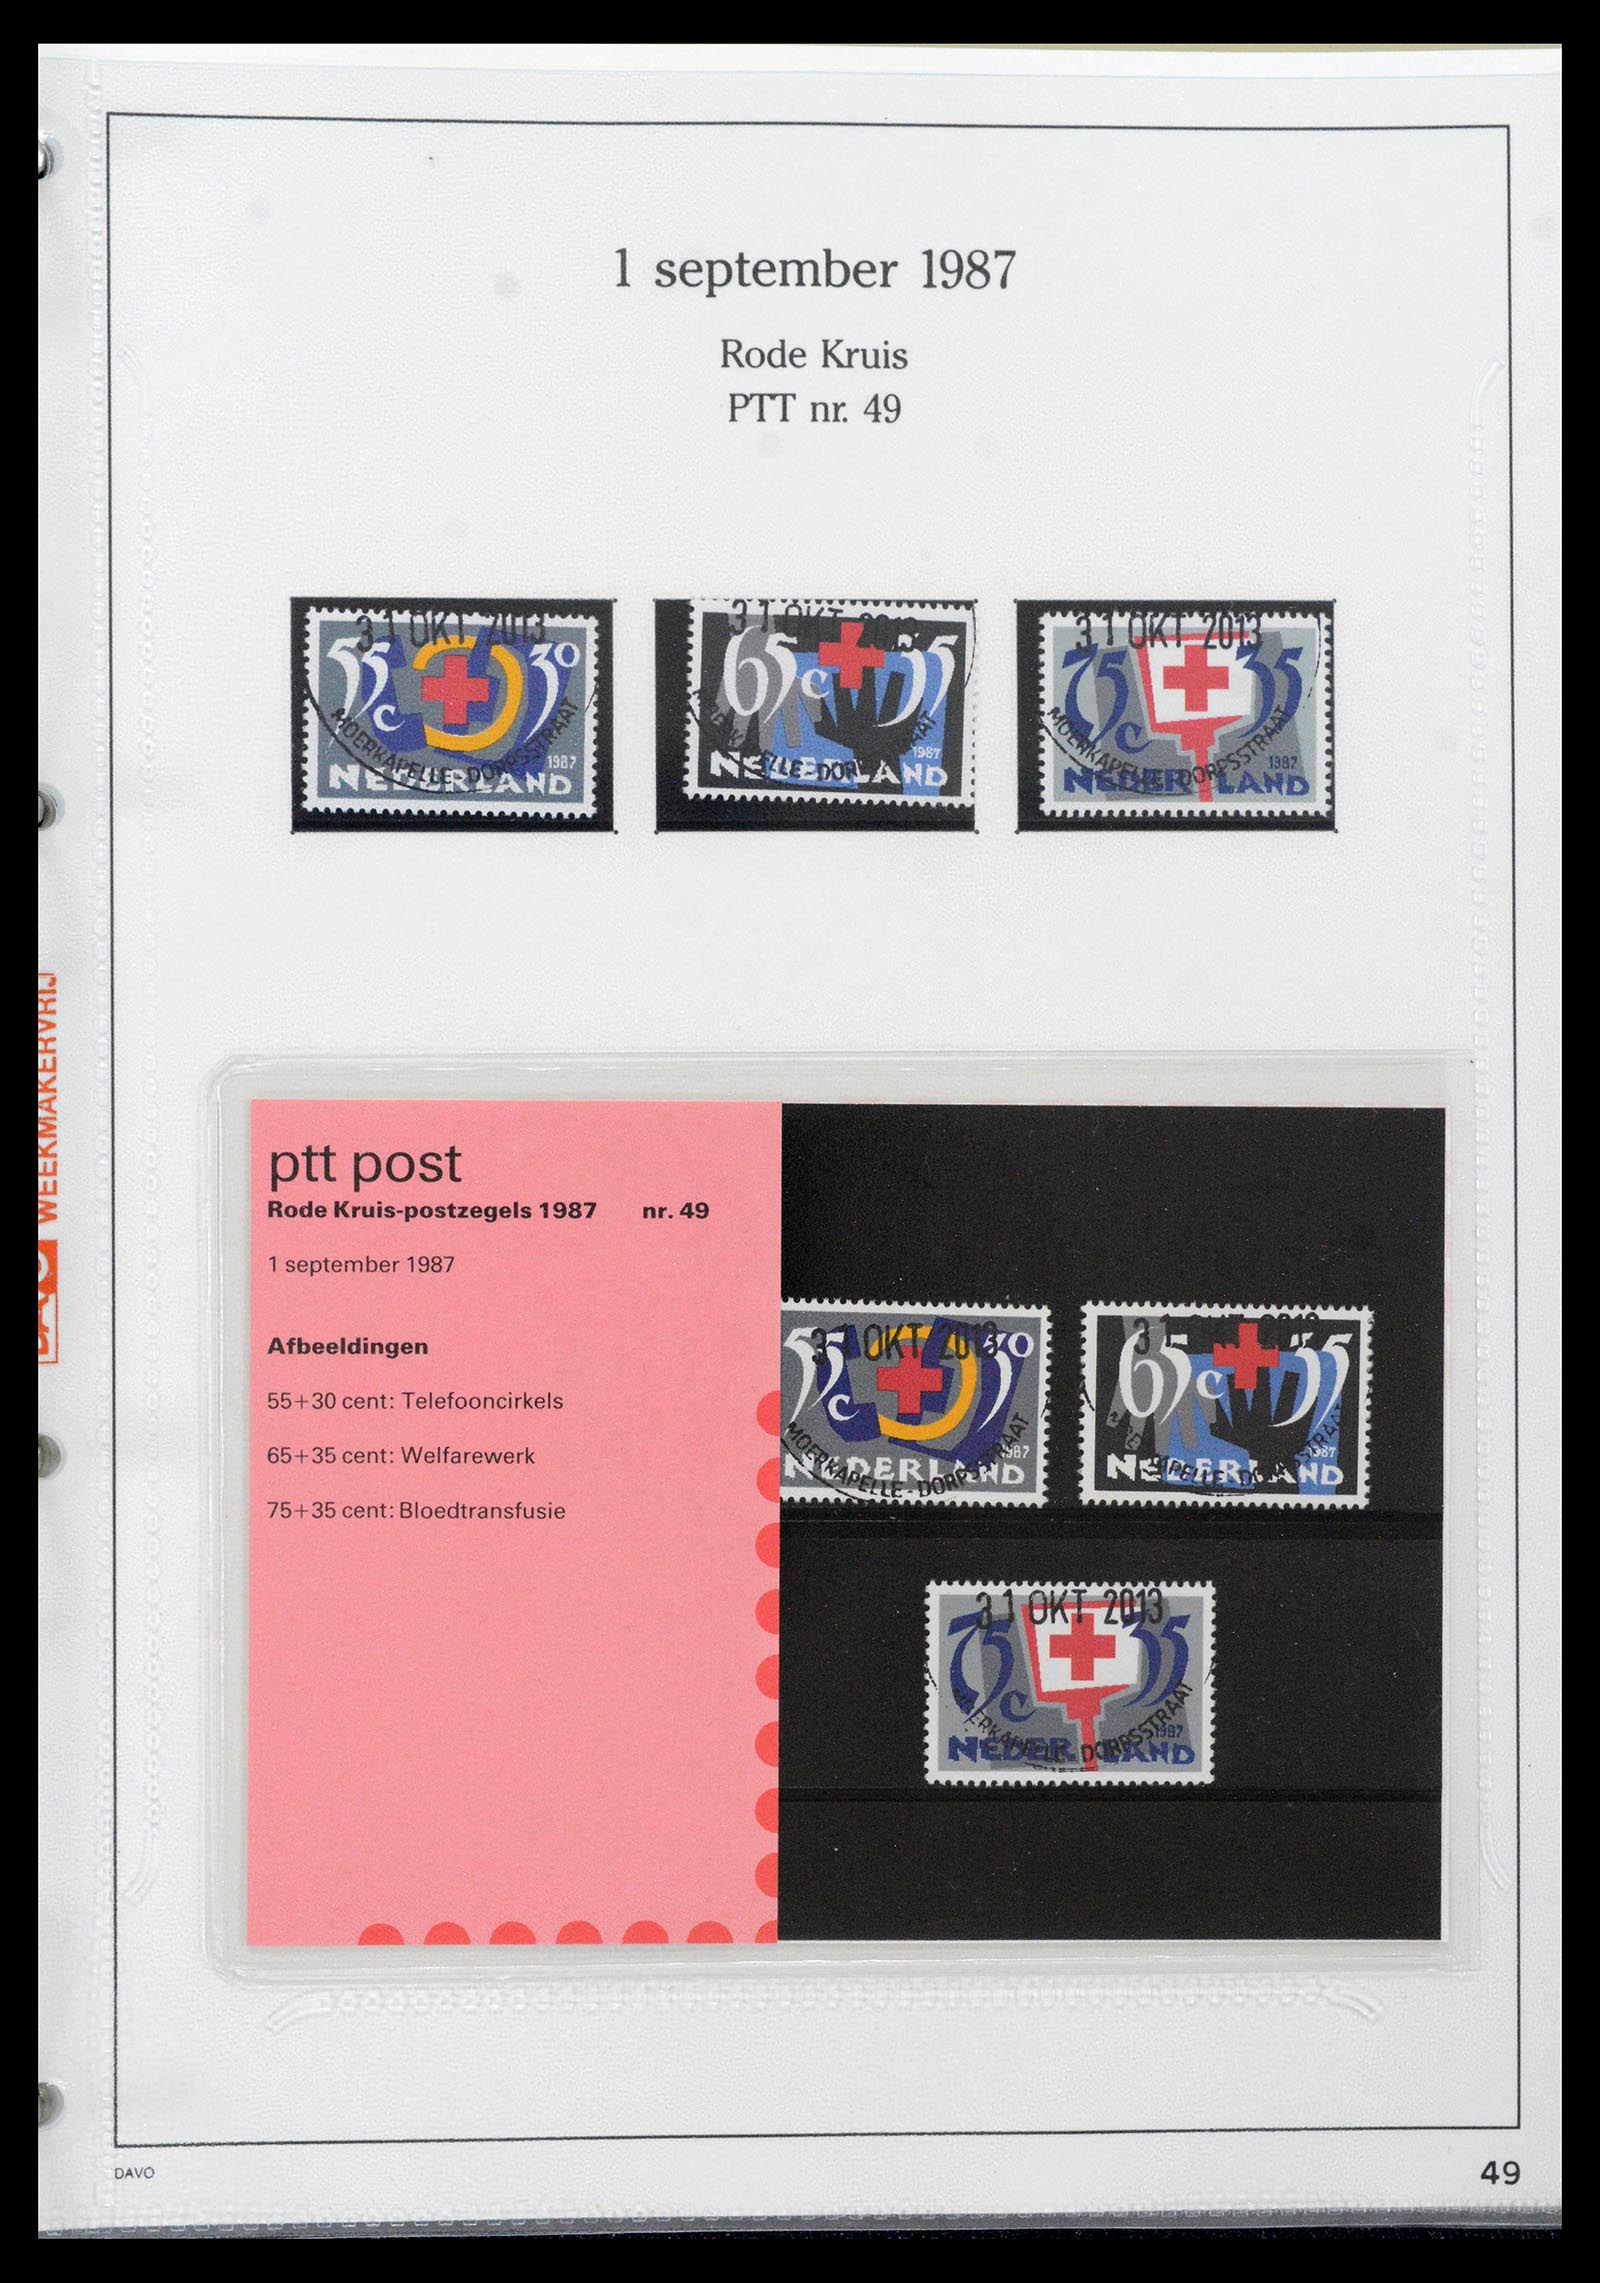 39121 0049 - Stamp collection 39121 Netherlands presentationpacks 1982-2001.